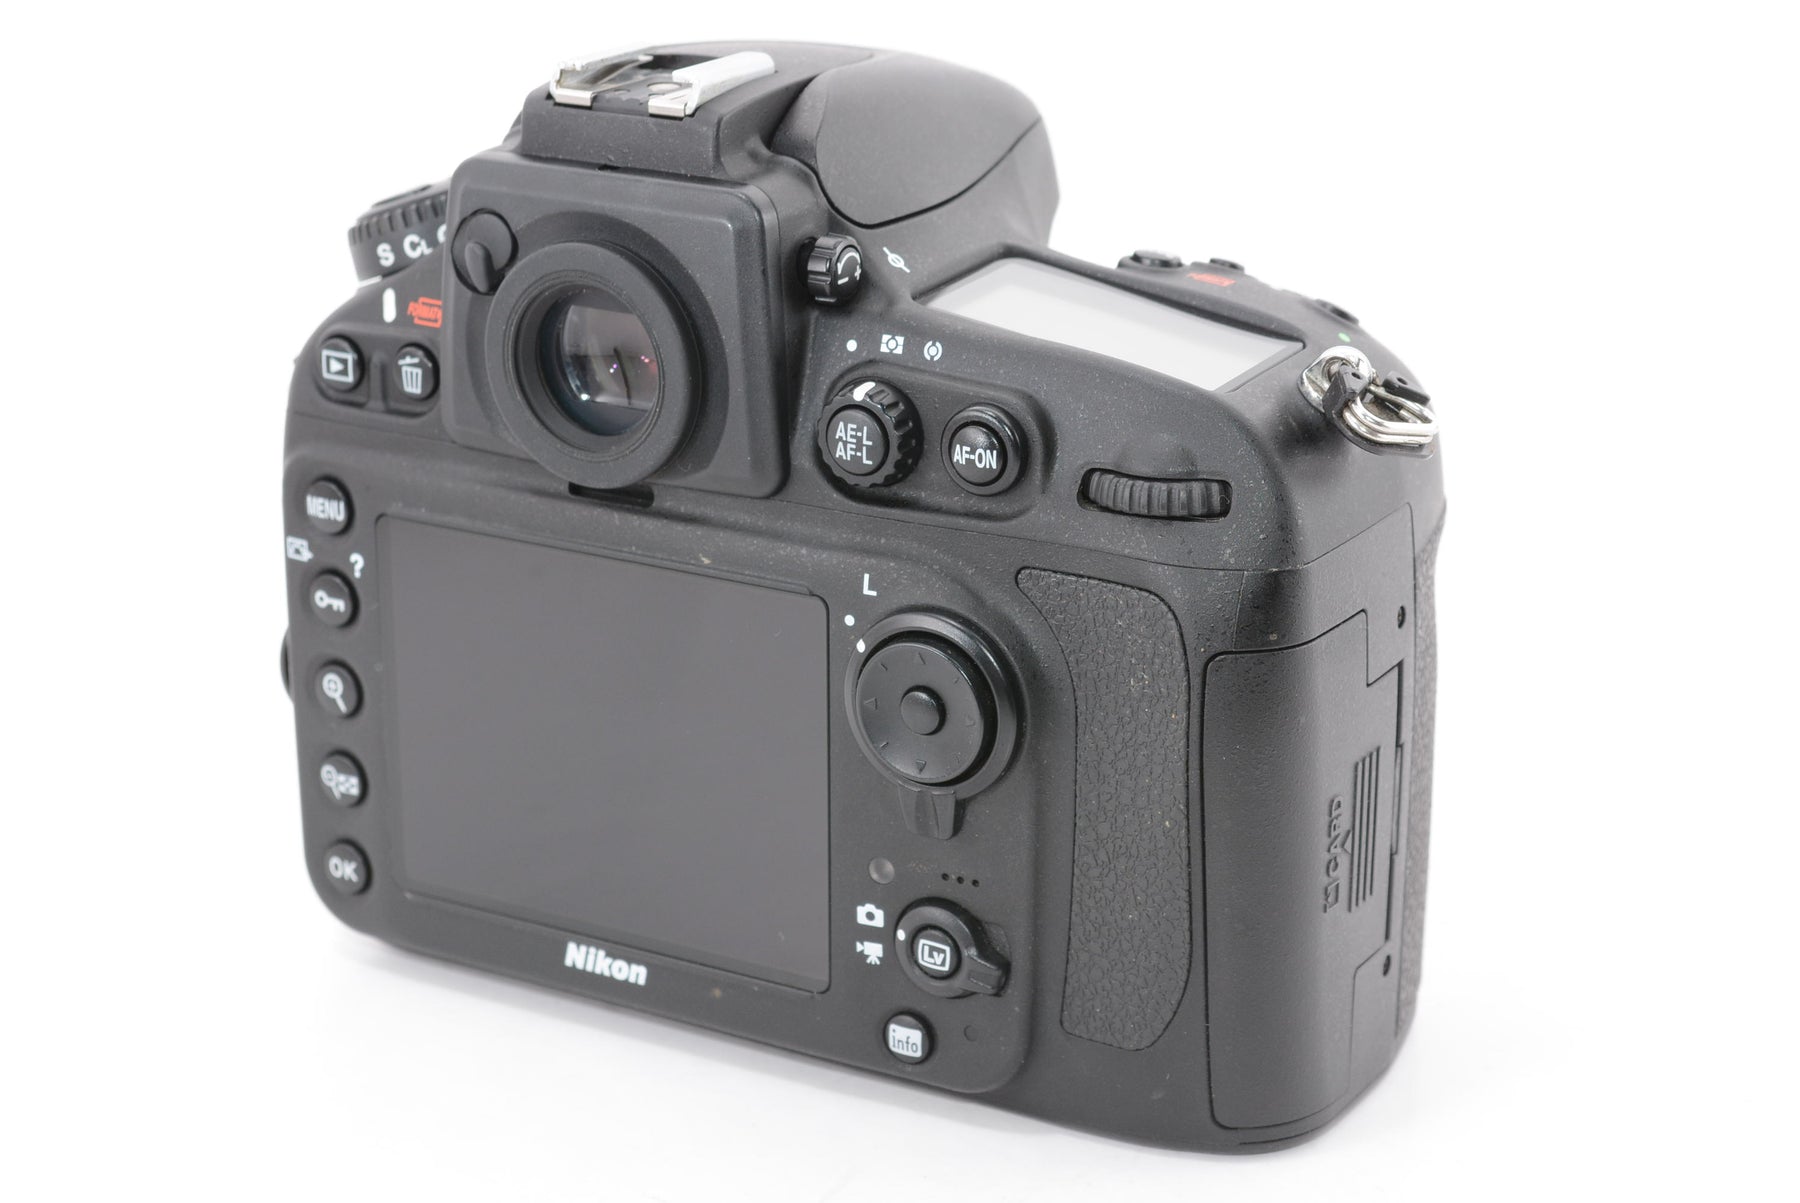 【外観特上級】Nikon デジタル一眼レフカメラ D800E ボディー D800E